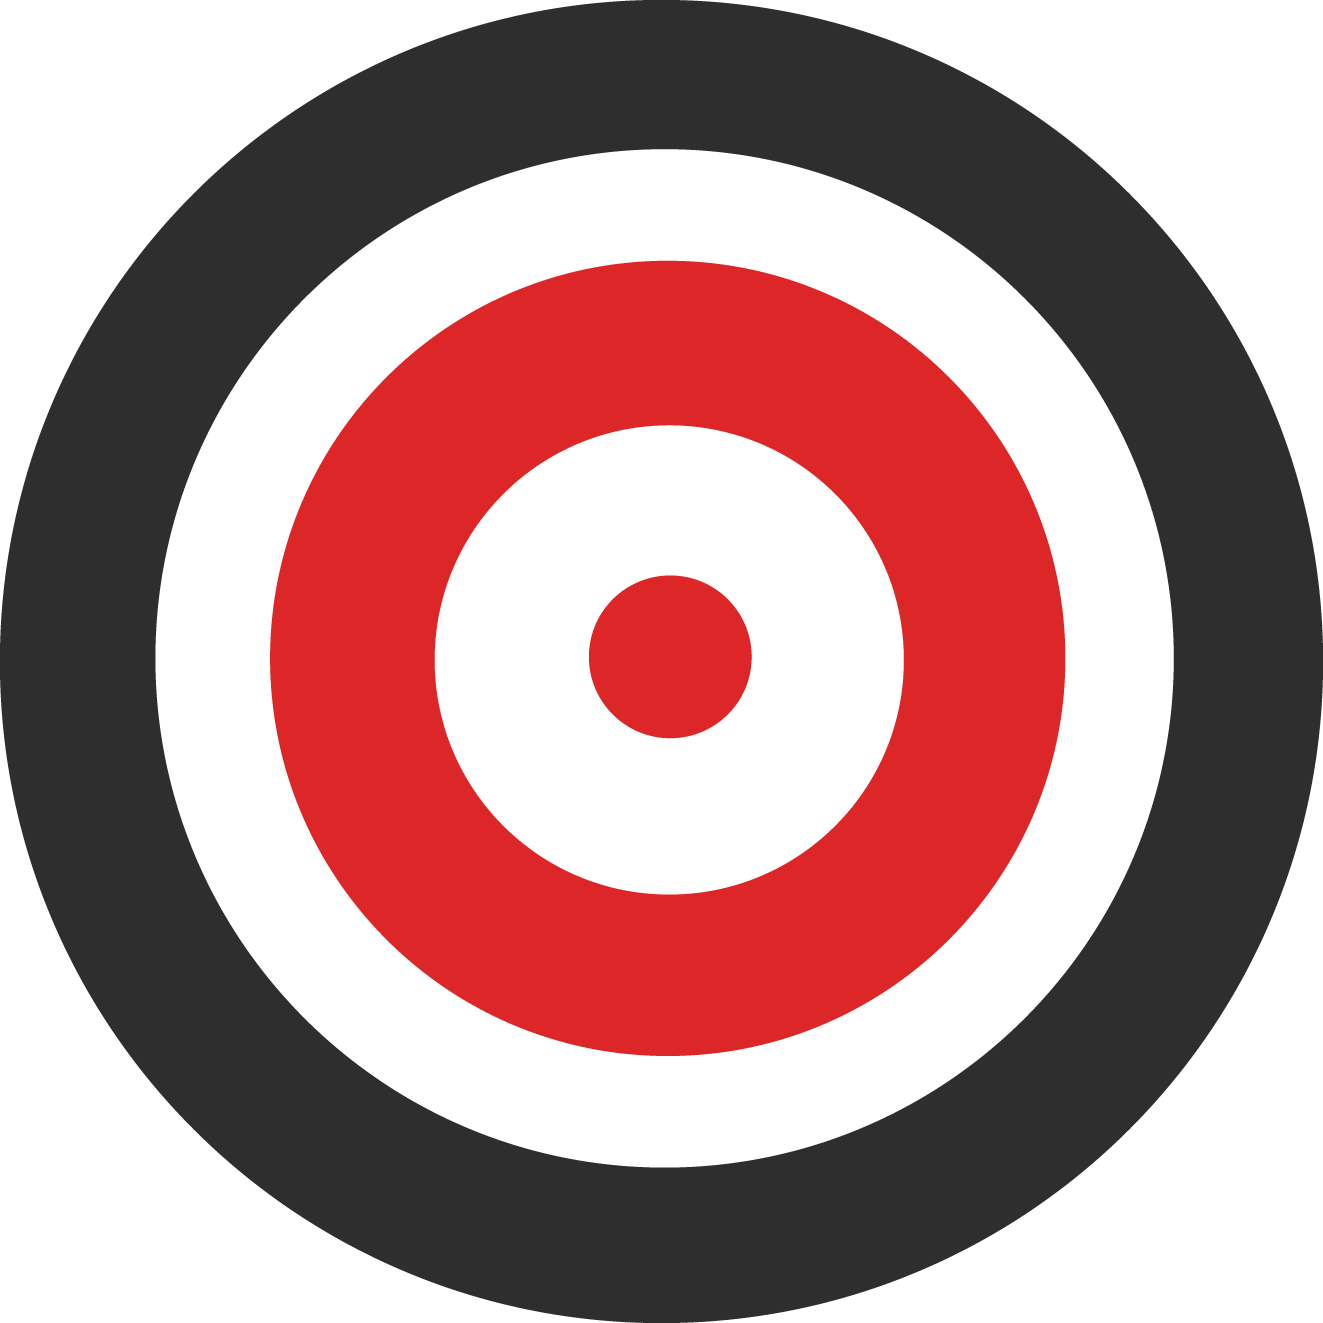 Target Png Images Target Logo Icon Free Download Free Transparent